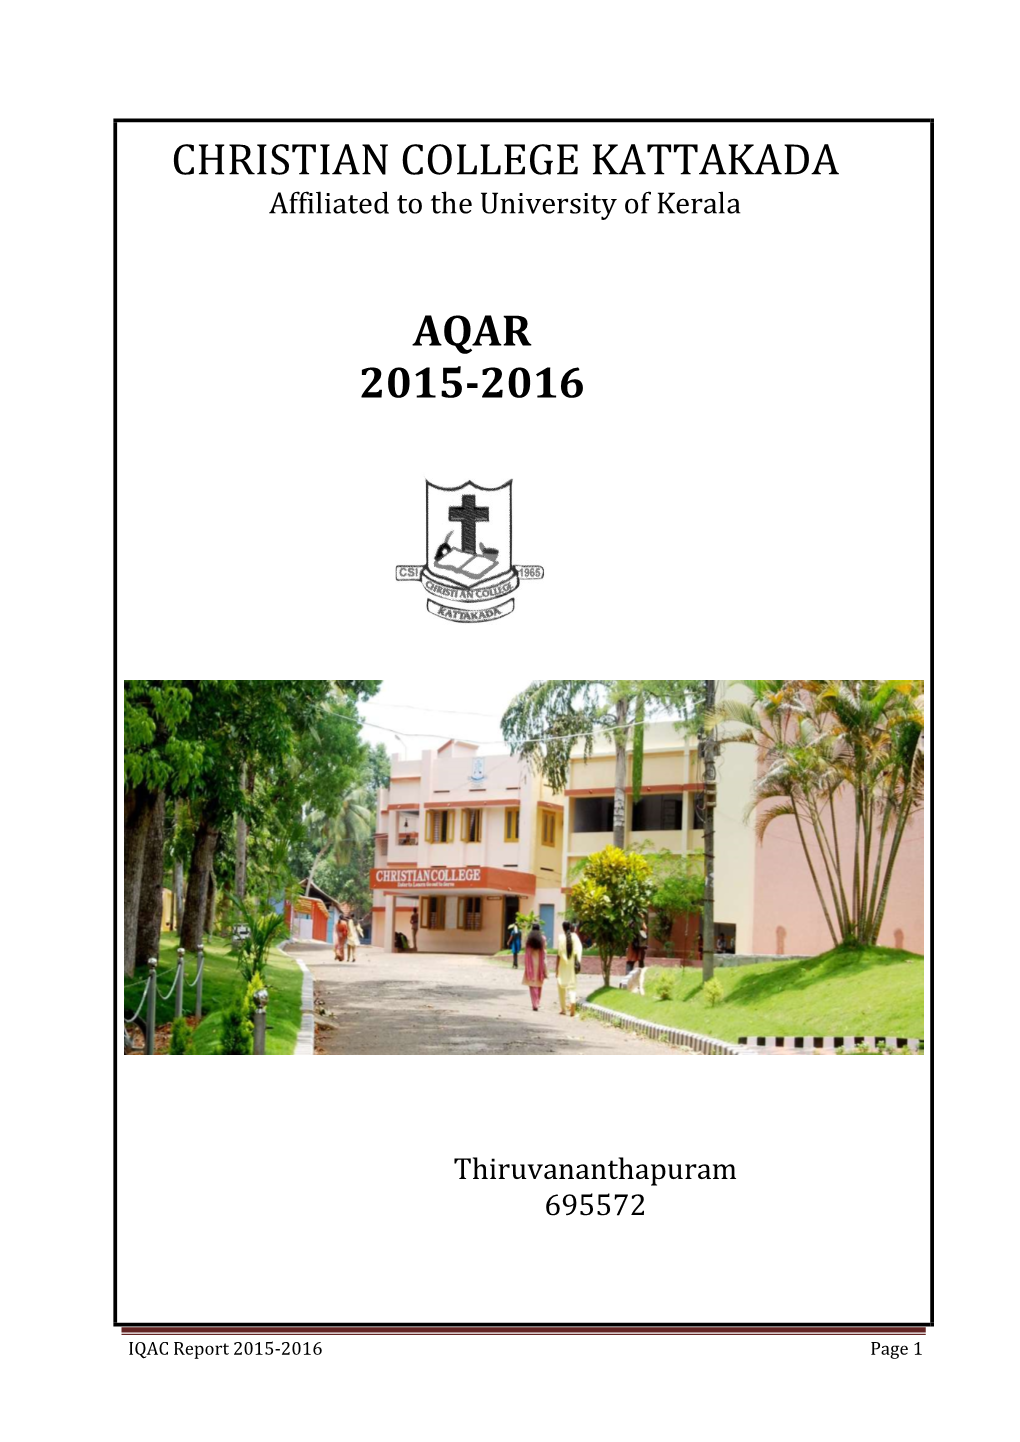 Christian College Kattakada Aqar 2015-2016